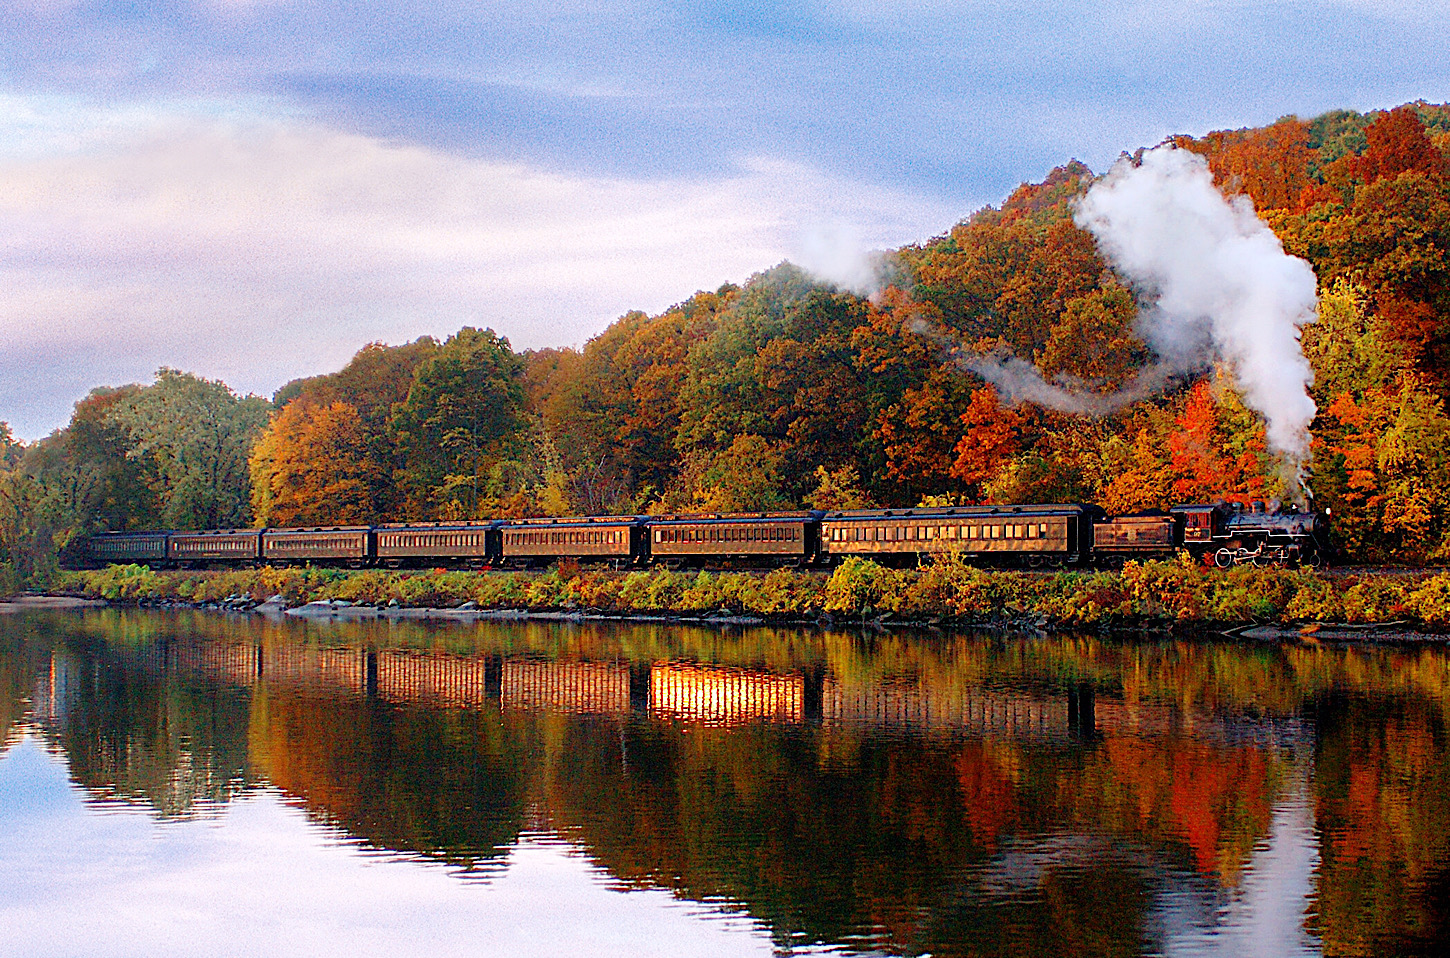 Malerisch unterwegs mit dem Essex River Steam Train